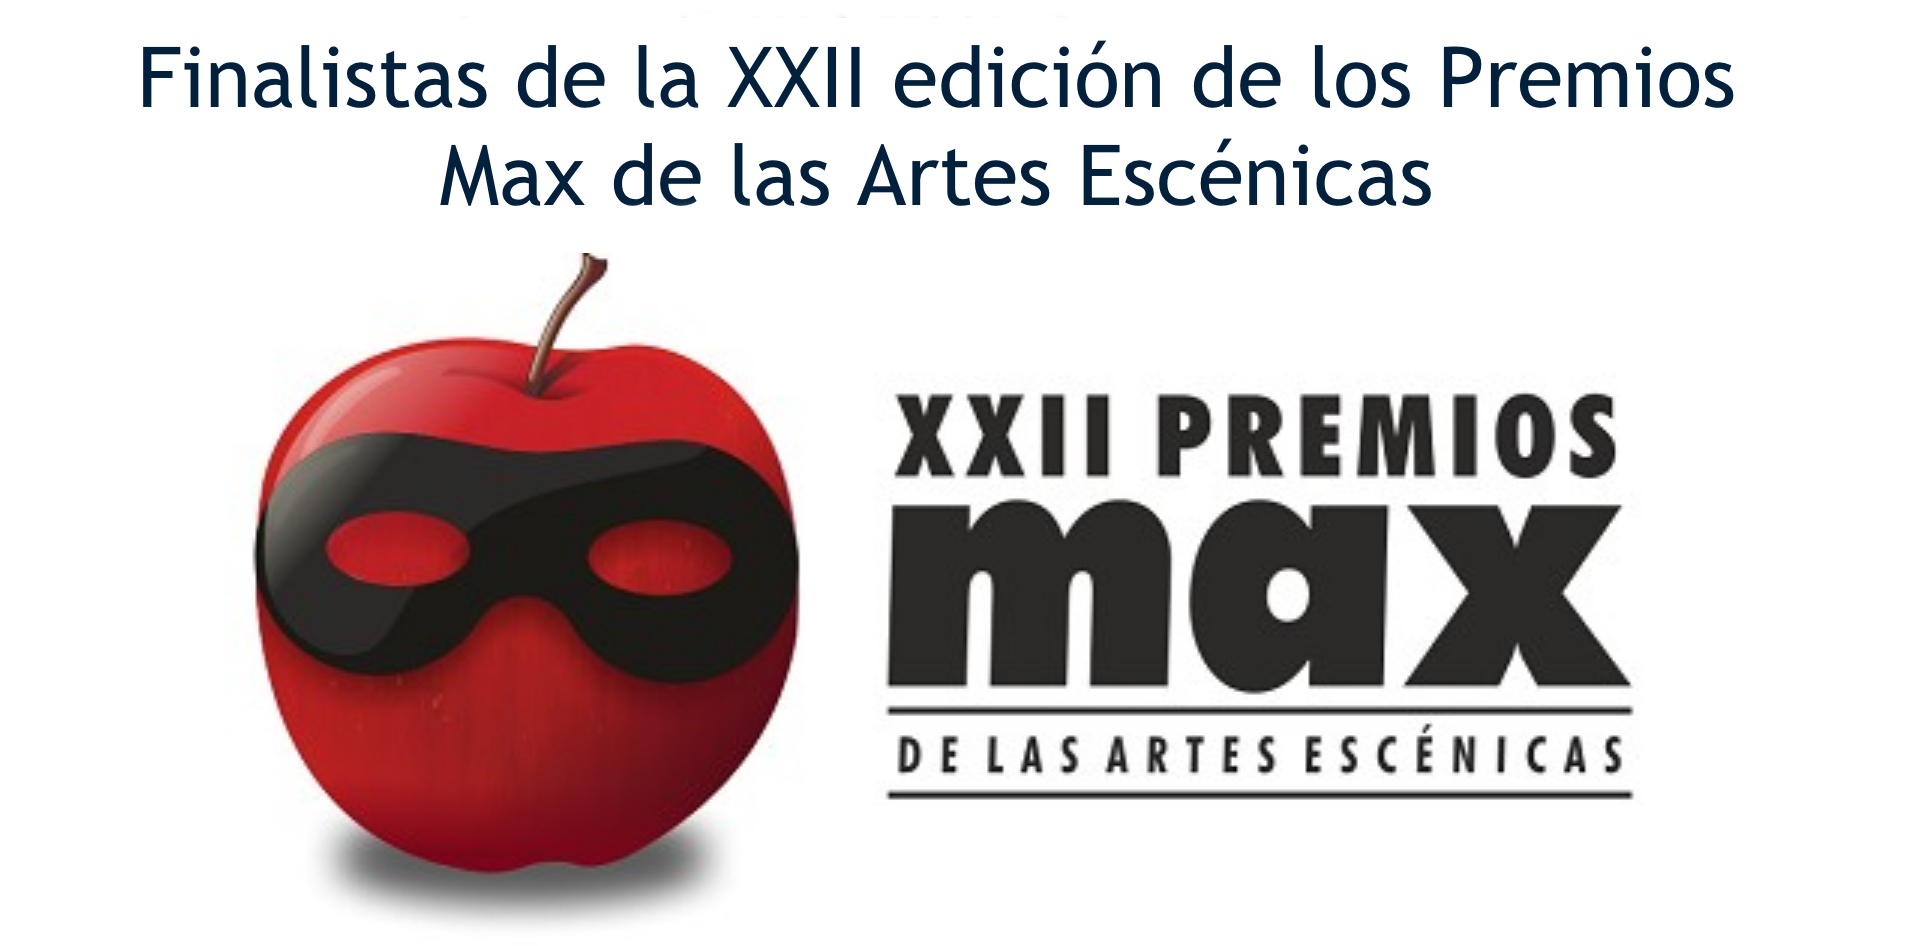 Conoce los Finalistas de los XXII Premios Max